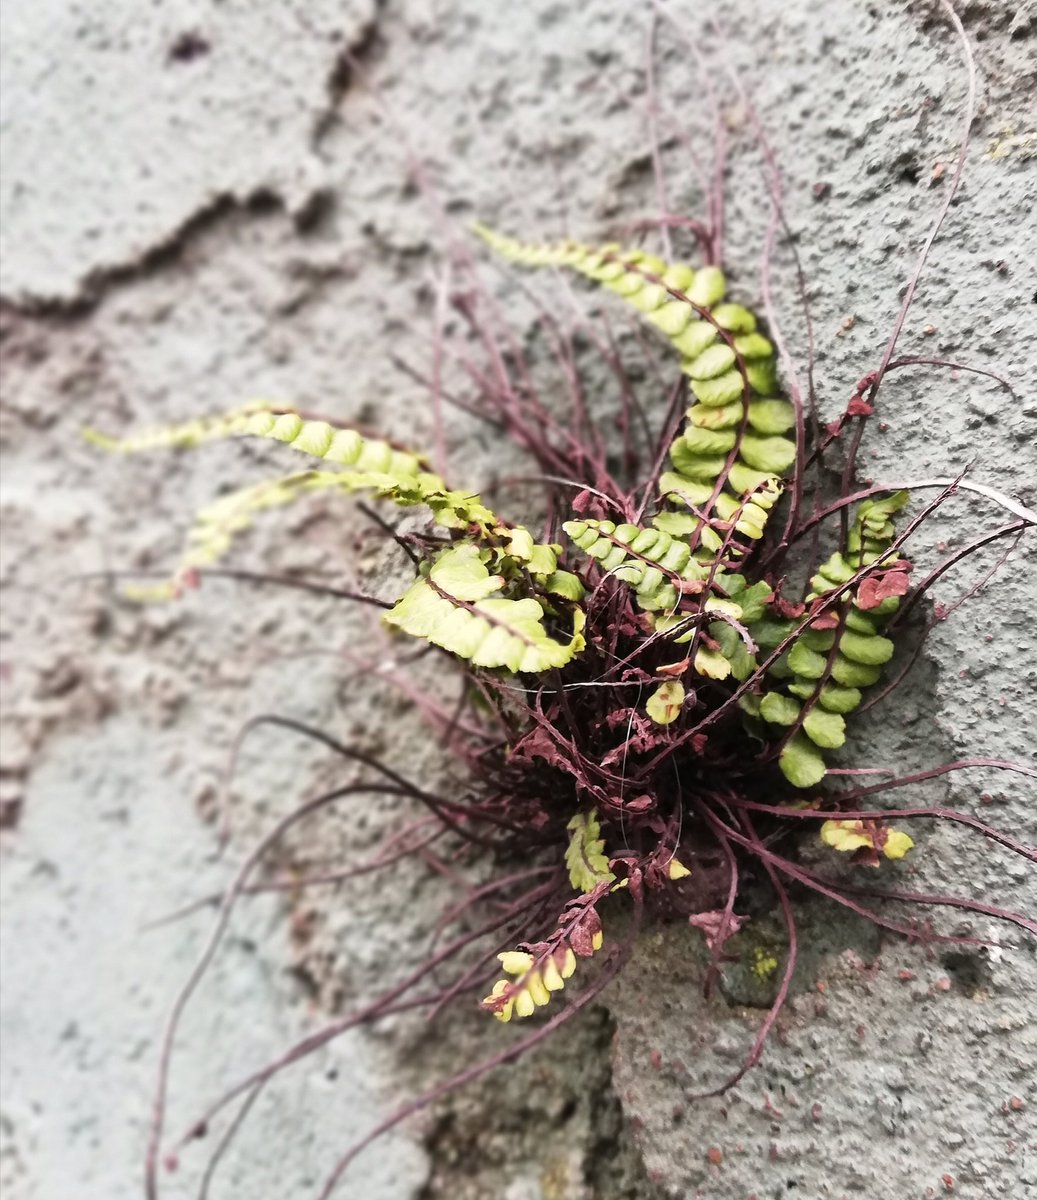 Nature always finds a way #derelictbuilding #growth #wall #NewRoss #wexford #ireland #weedsareprettytoo #nofilter